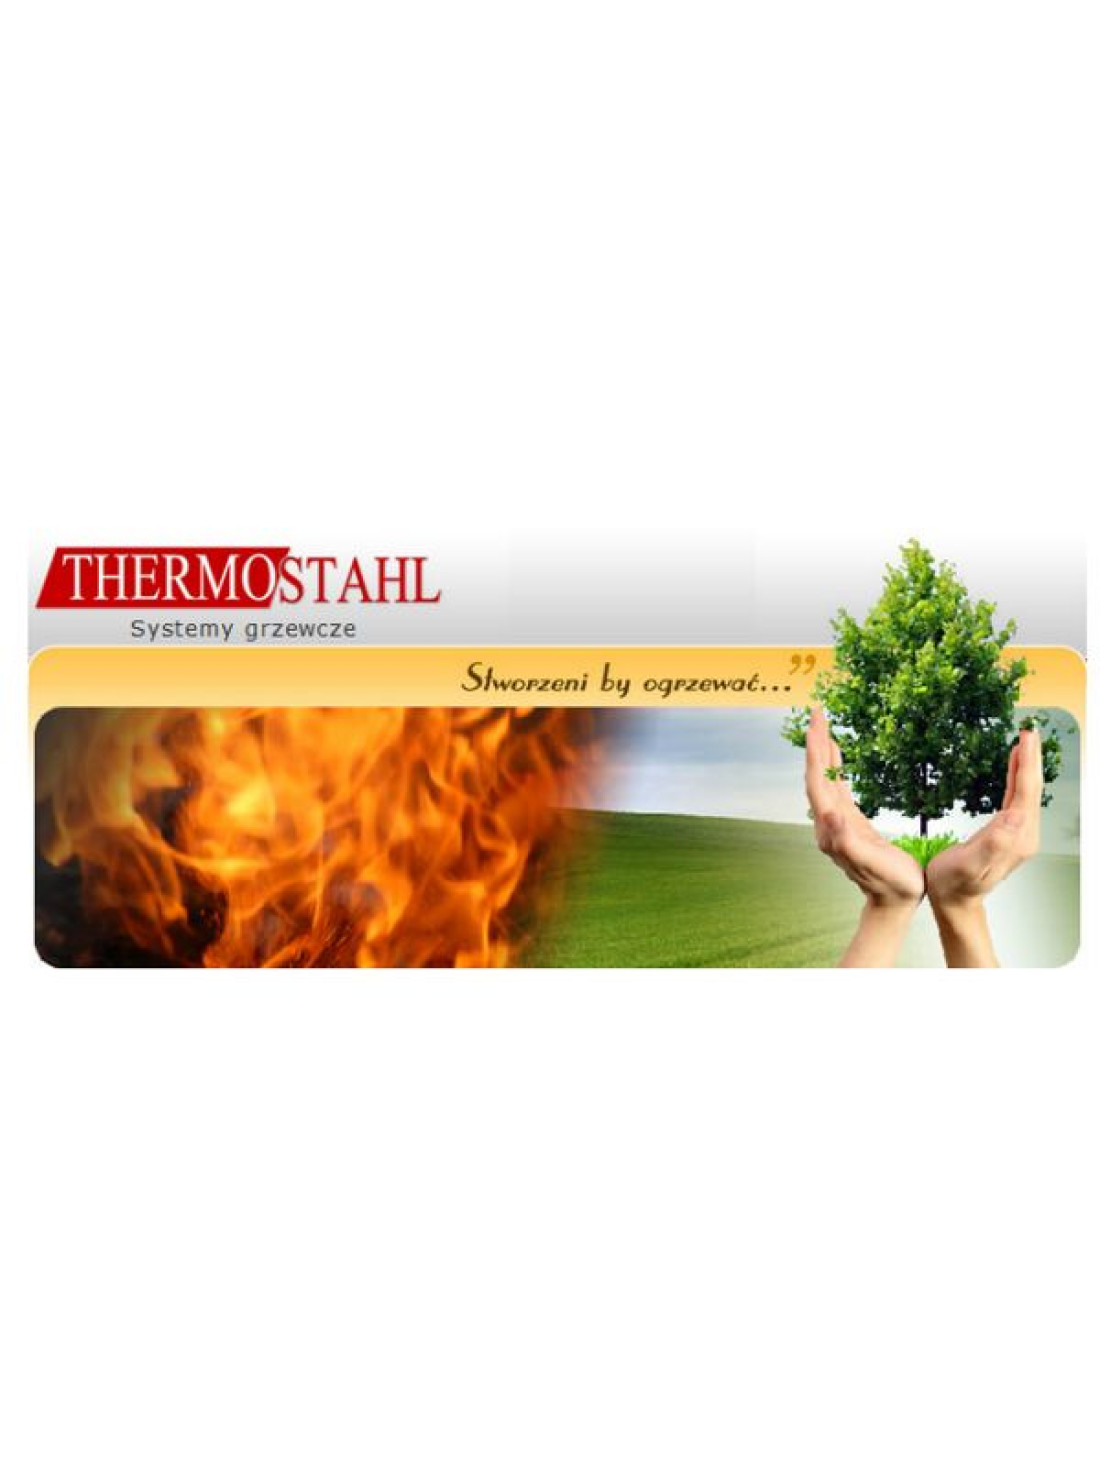 Firma Thermostahl zaprasza na szkolenie dla projektantów i instalatorów